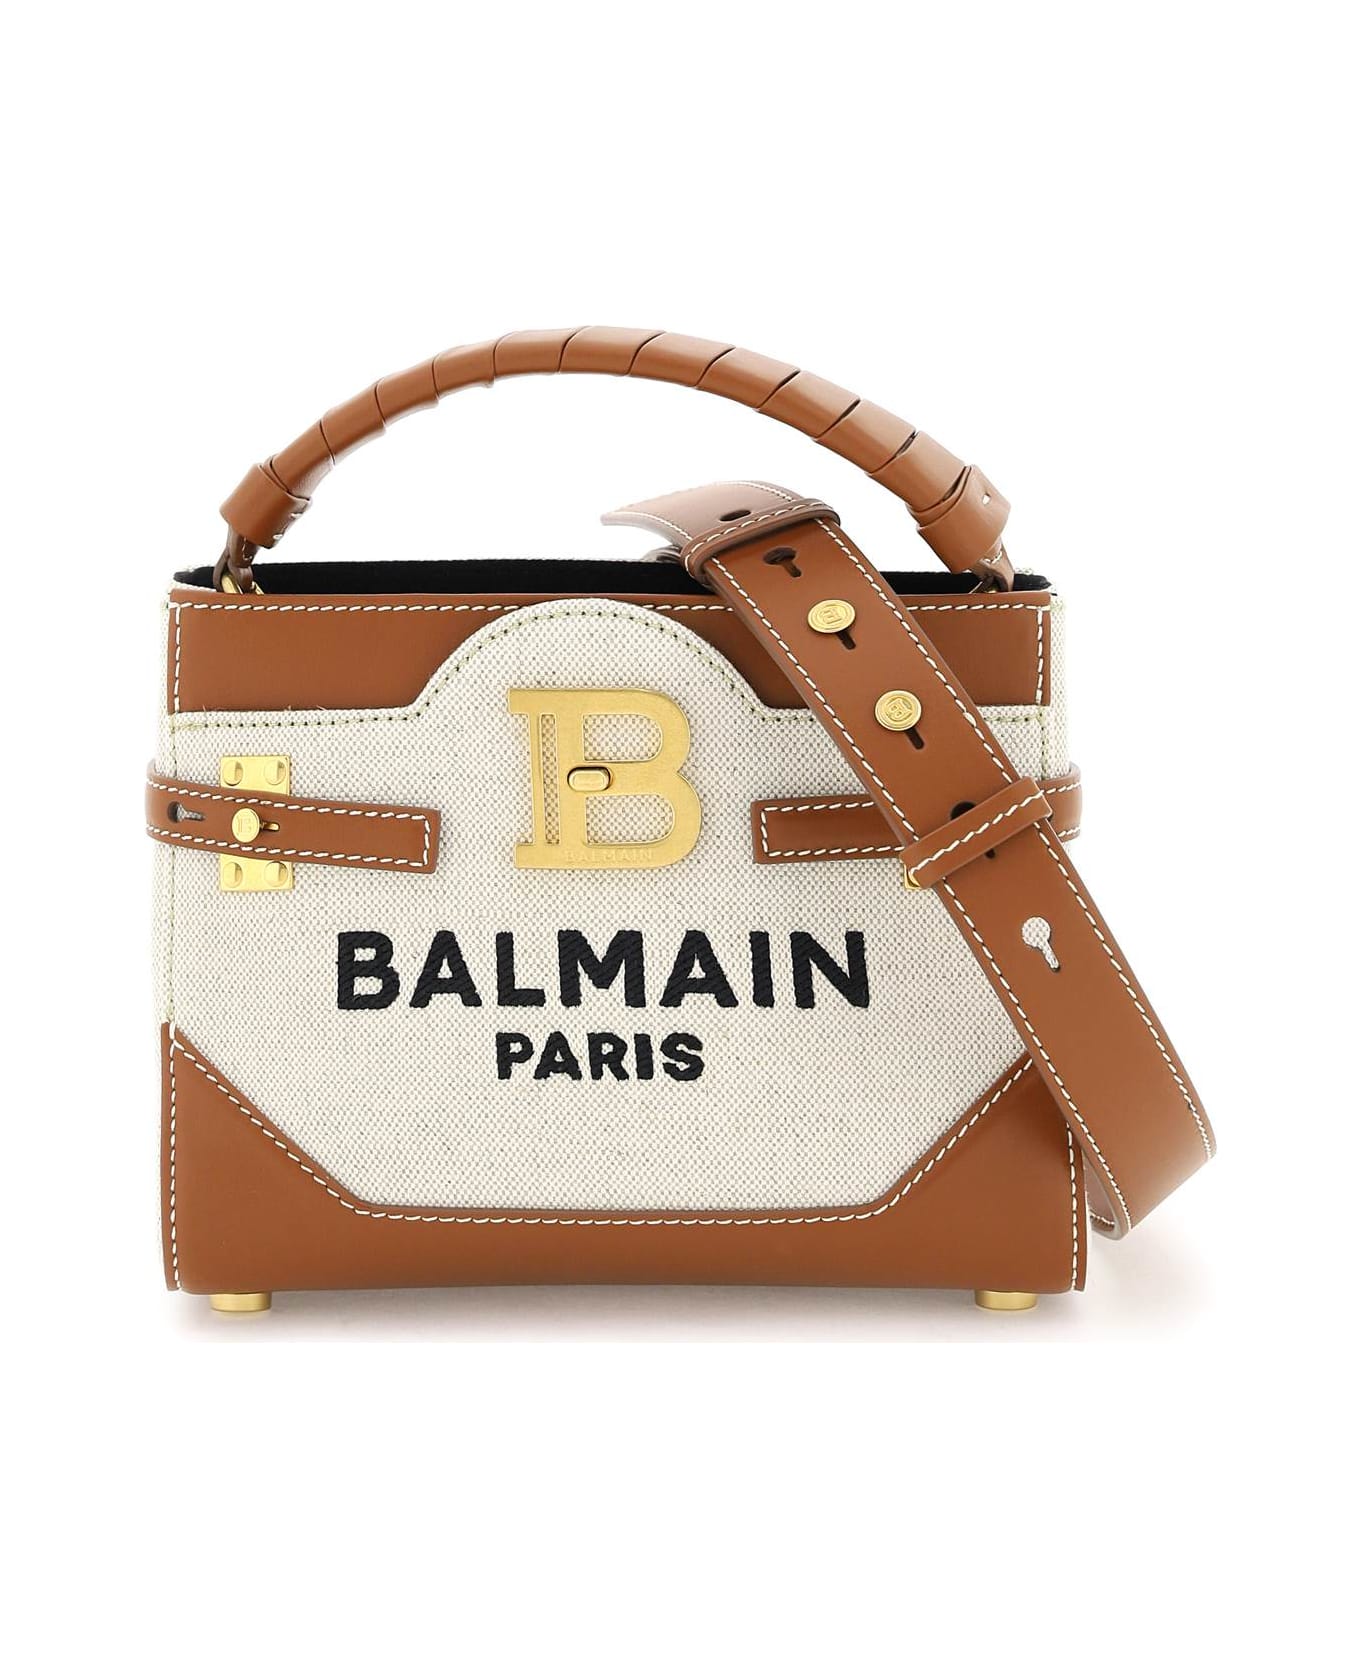 Balmain B-buzz Handbag - Beige トートバッグ